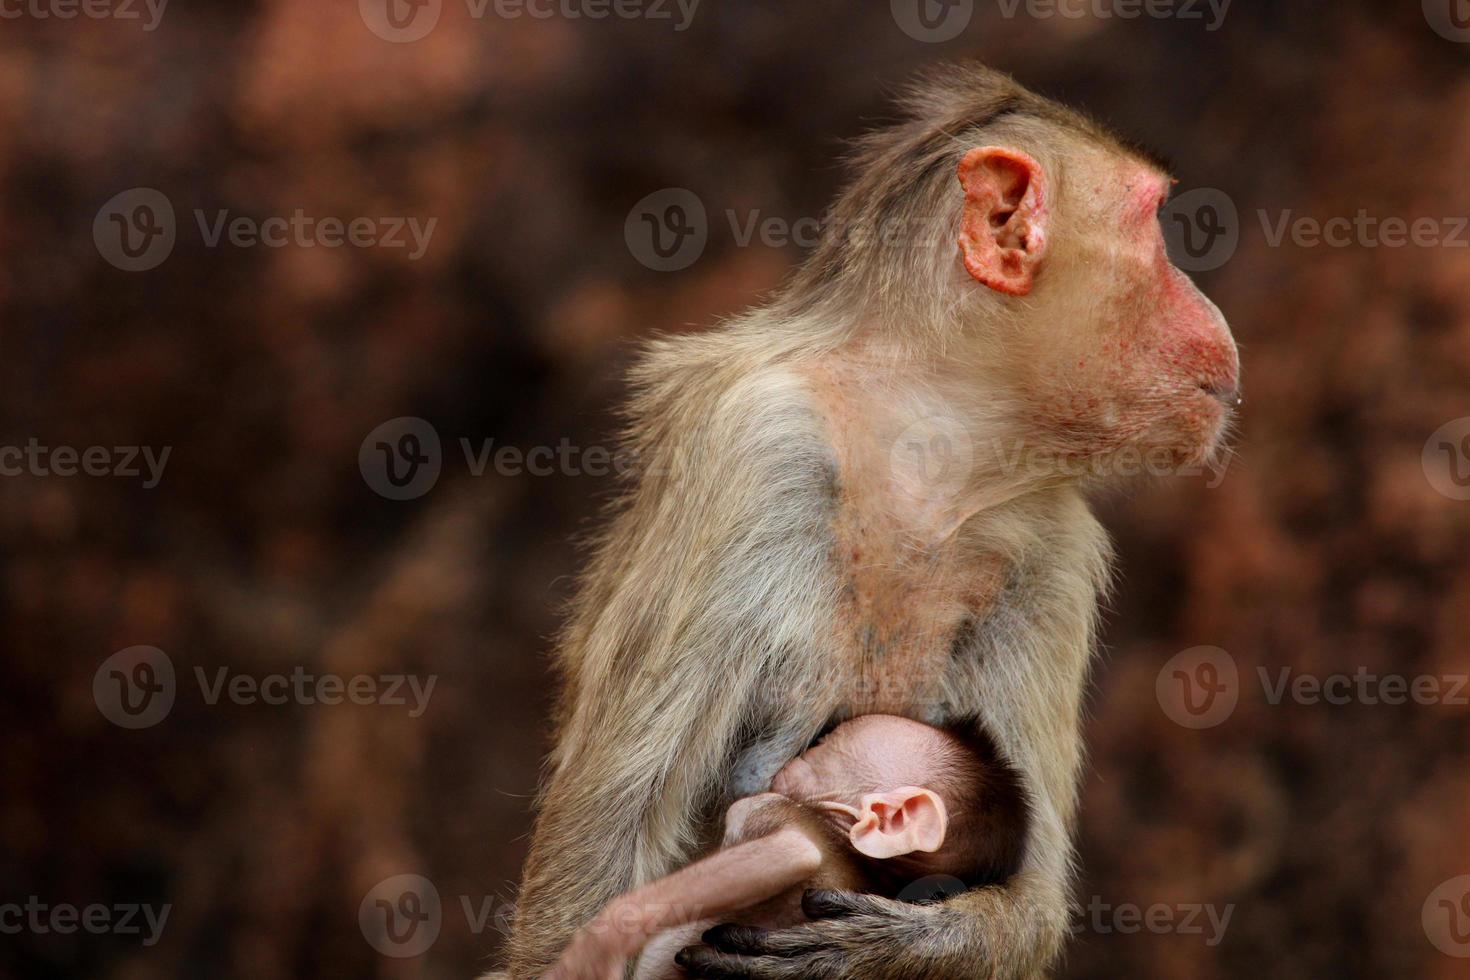 hätta makak apa med bebis i badami fort. foto